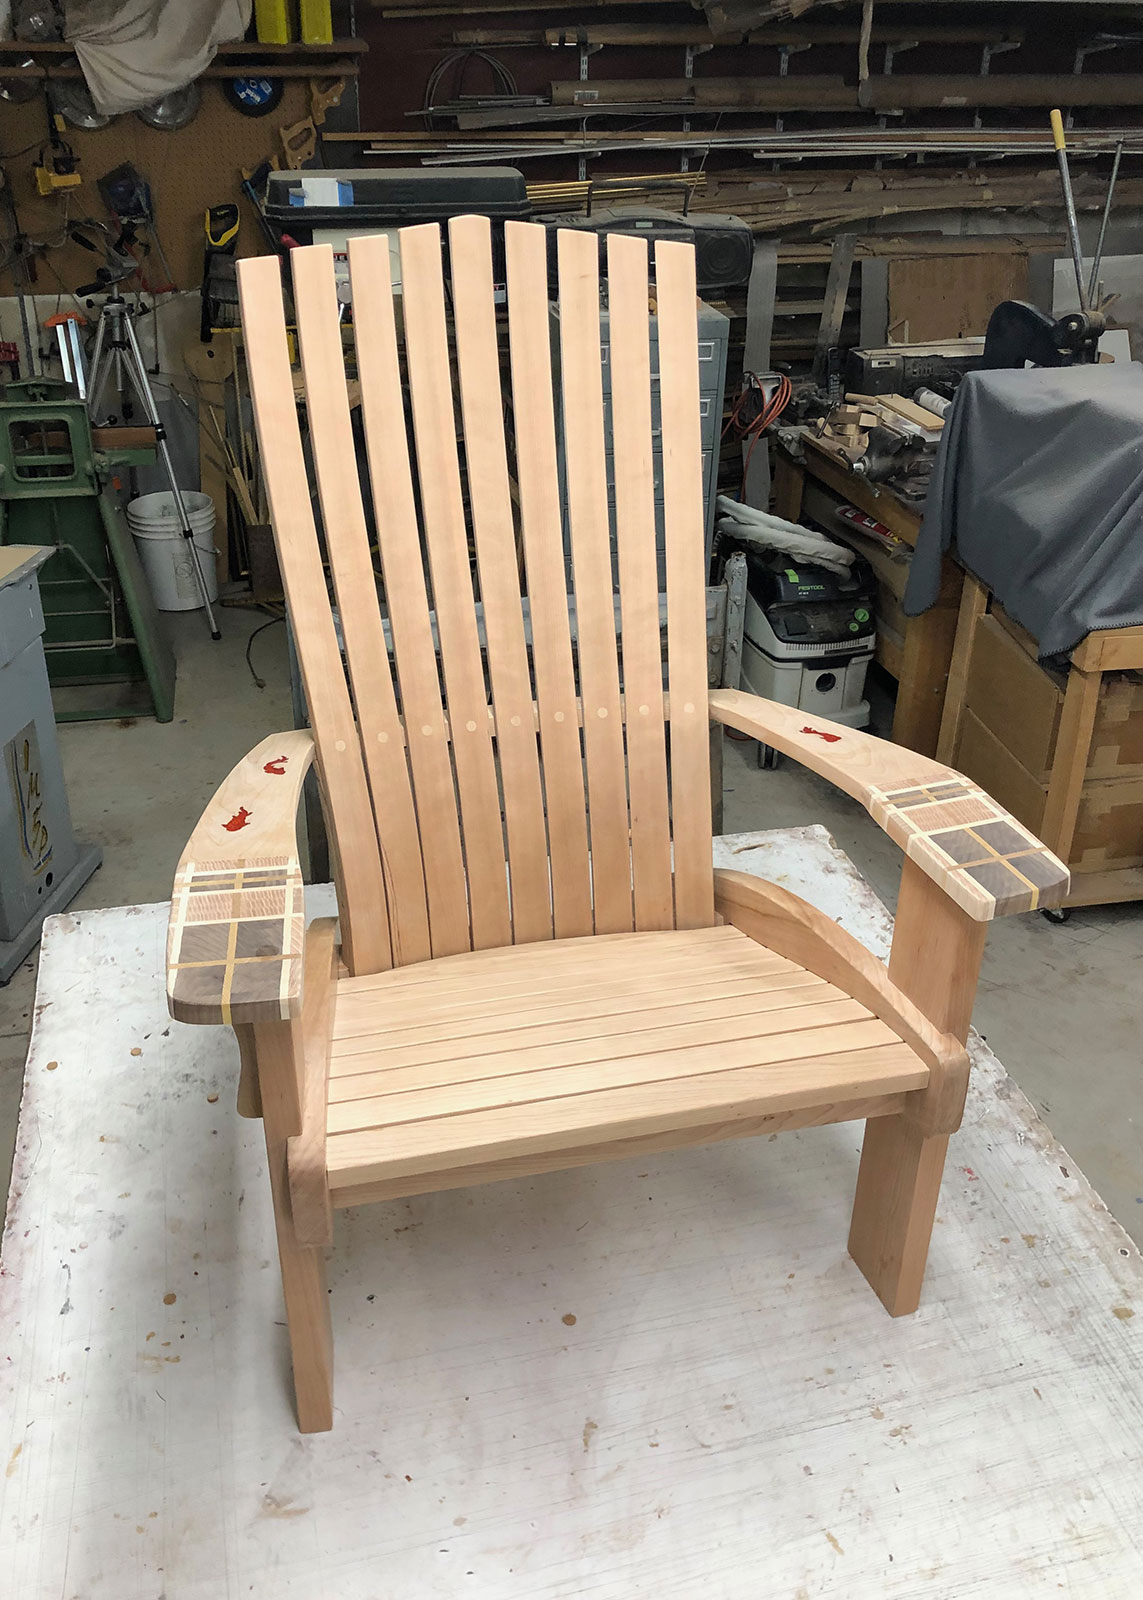 Glued chair